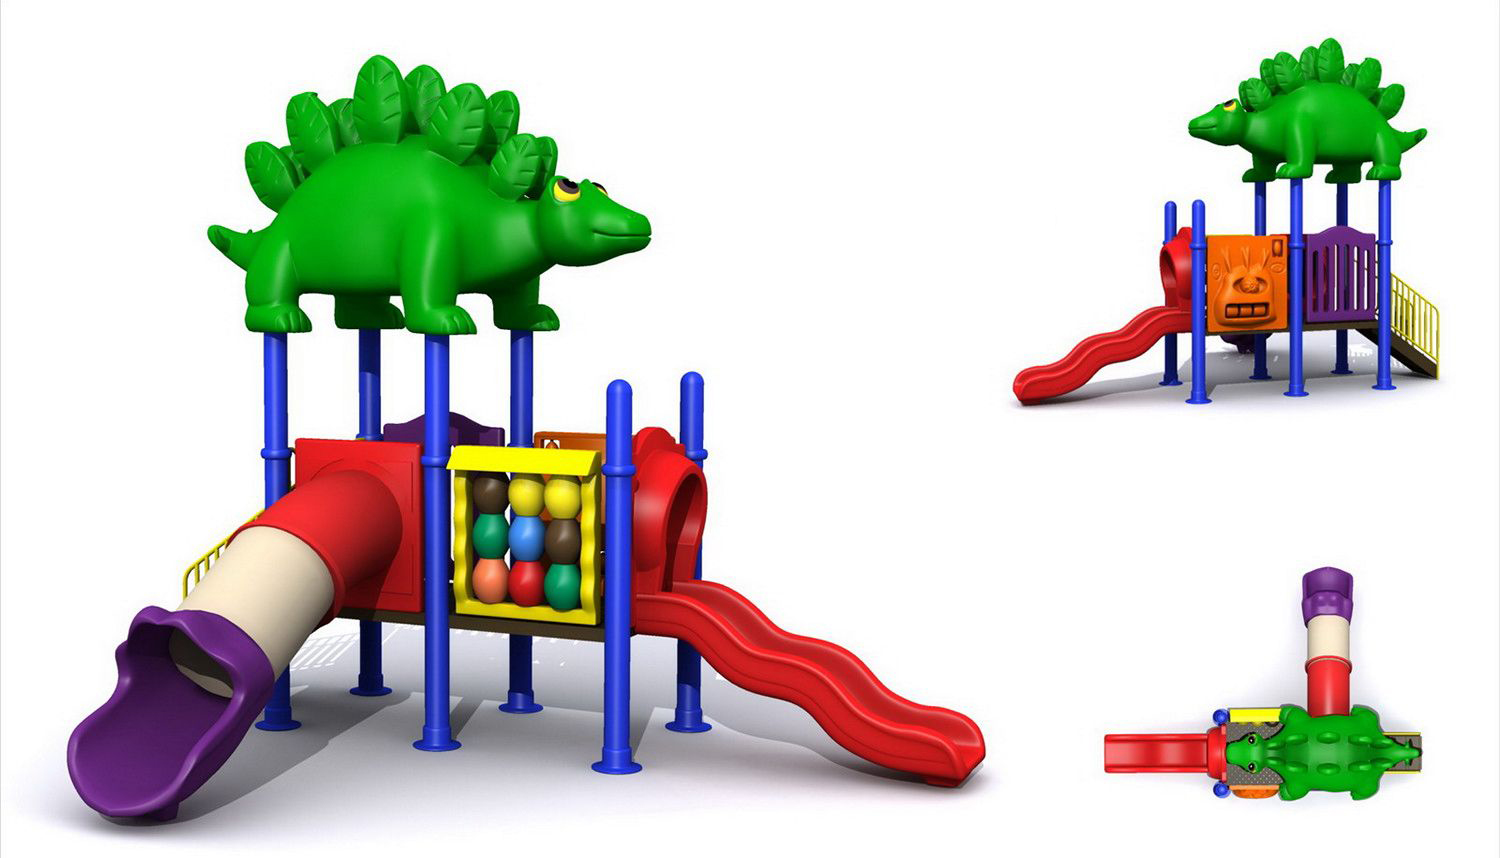 Игровой комлекс-площадка для детей Nature Series HDS-ZR141